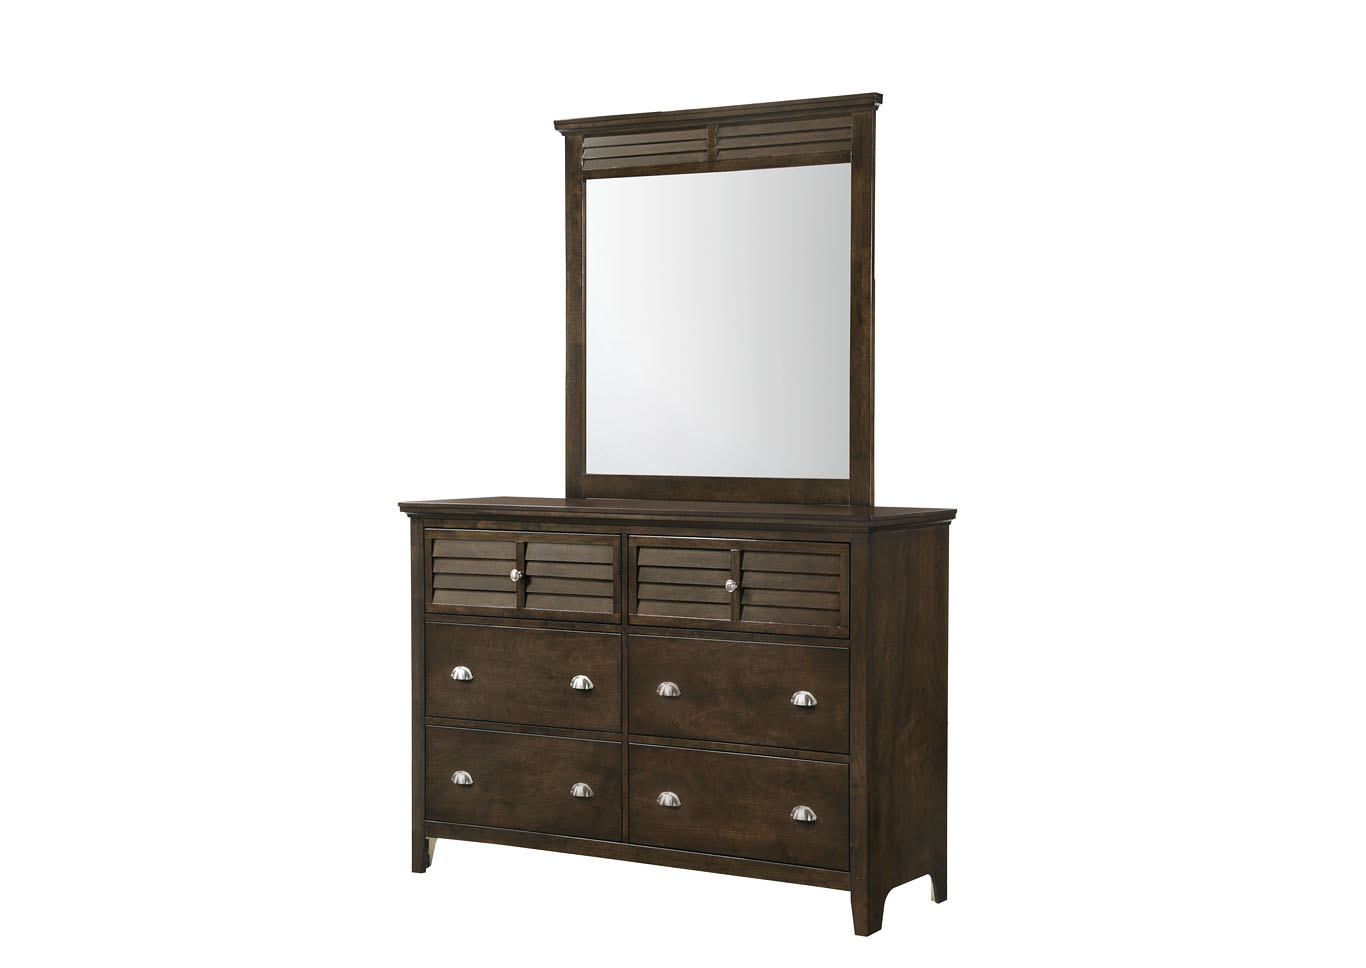 Jazz Brown Espresso Storage Bed with dresser mirror and nightstand